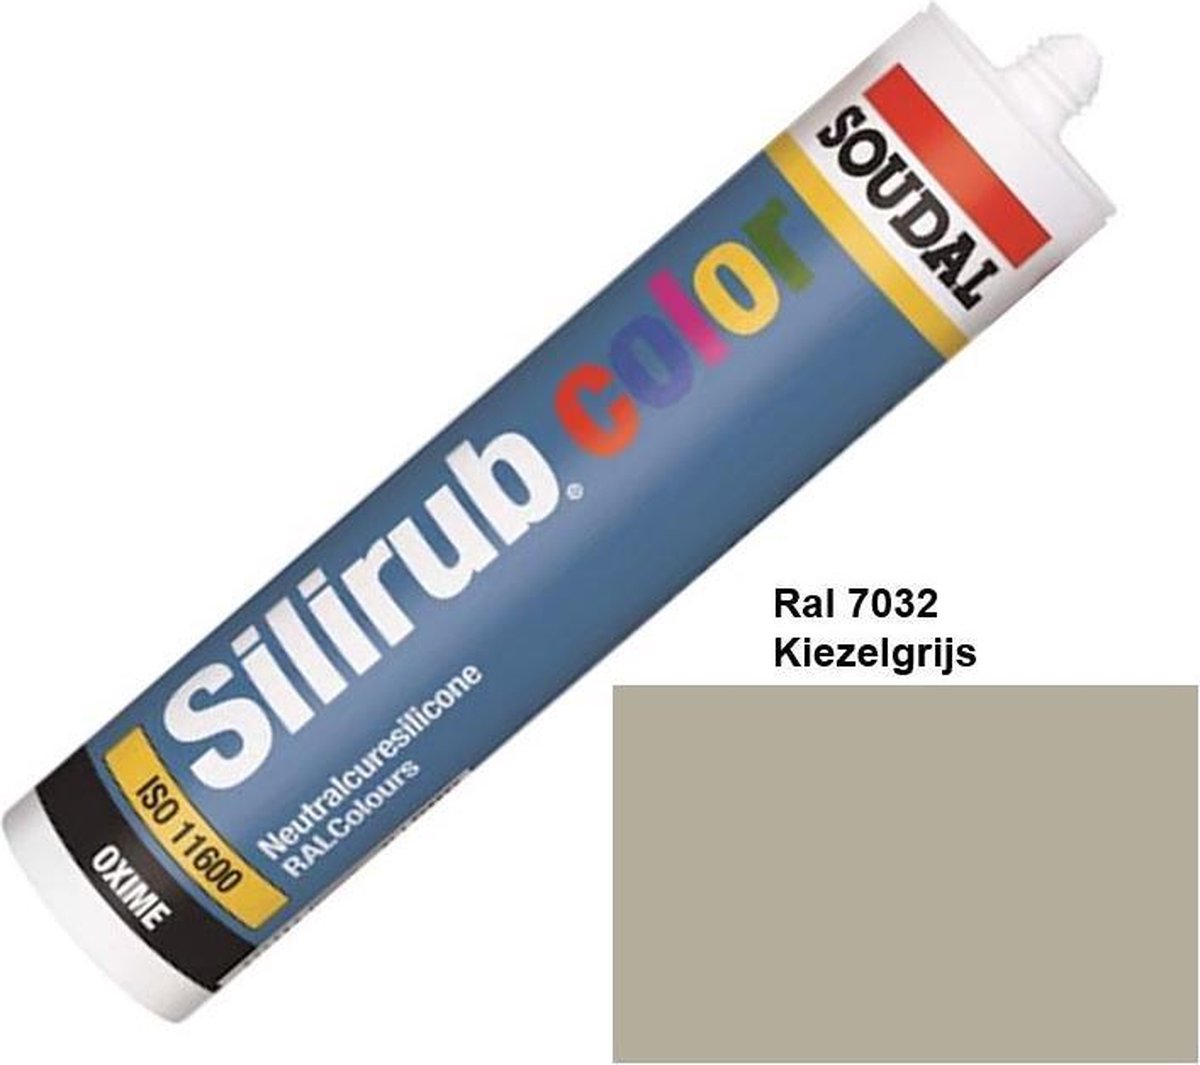 Soudal Silirub Color kit - Ral 7032 - kiezelgrijs - 310 Ml - 110727